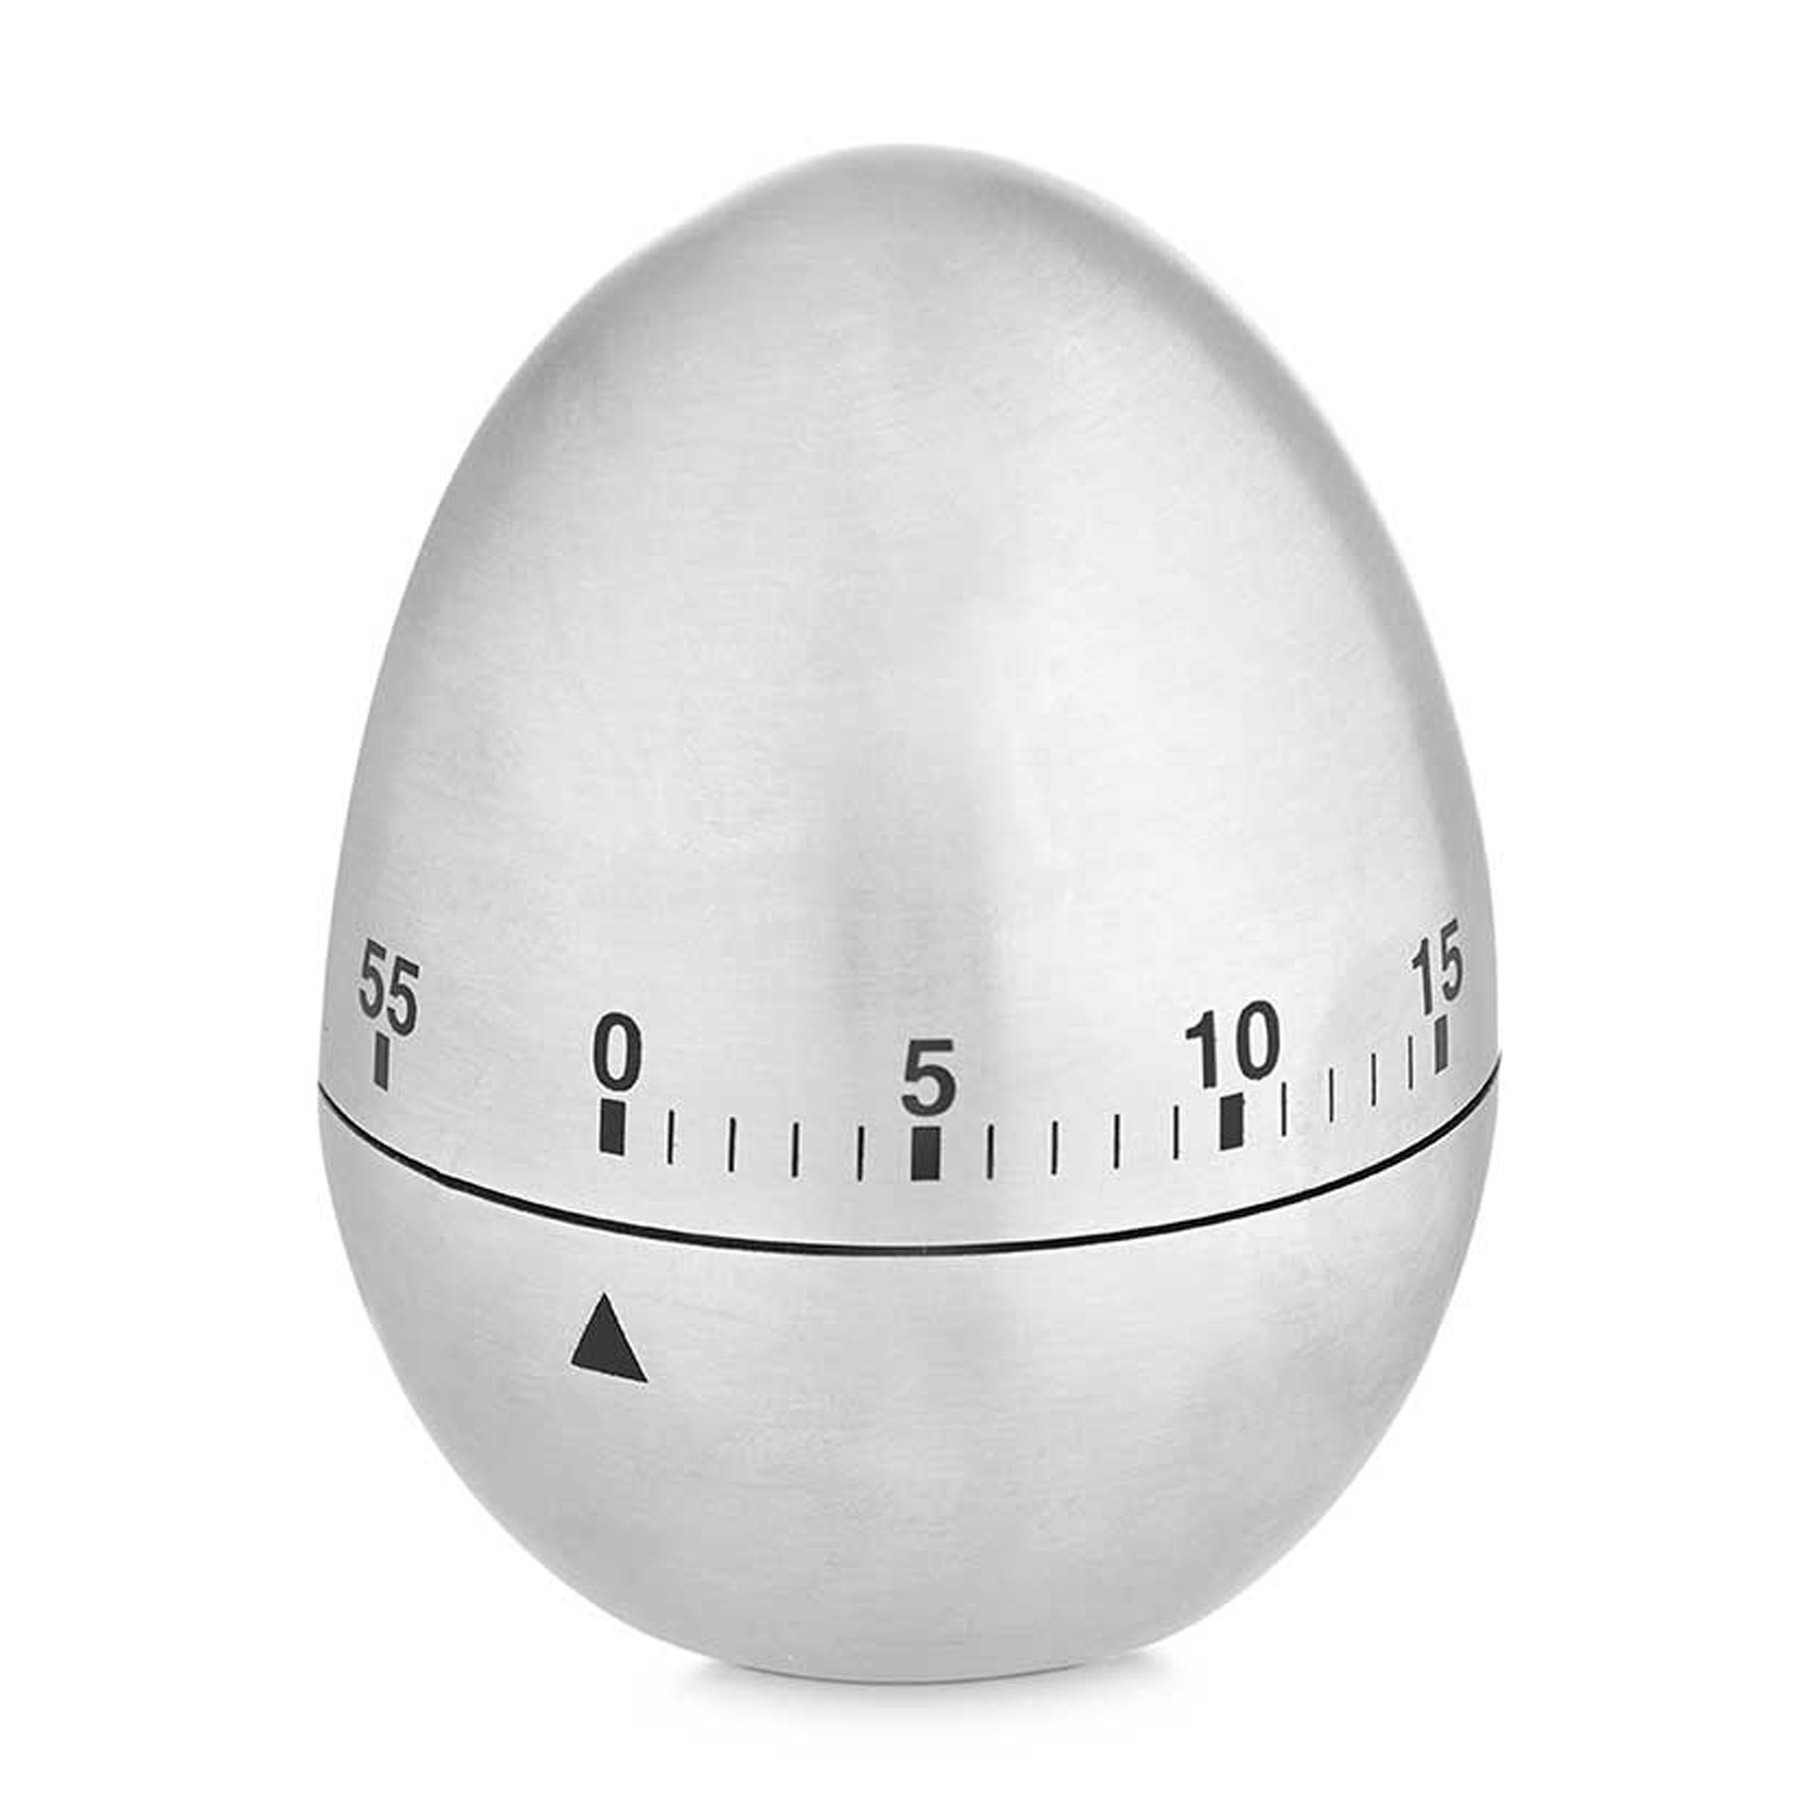 Kookwekker-eierwekker in eitjes vorm zilver RVS 7.5 cm minuten telling